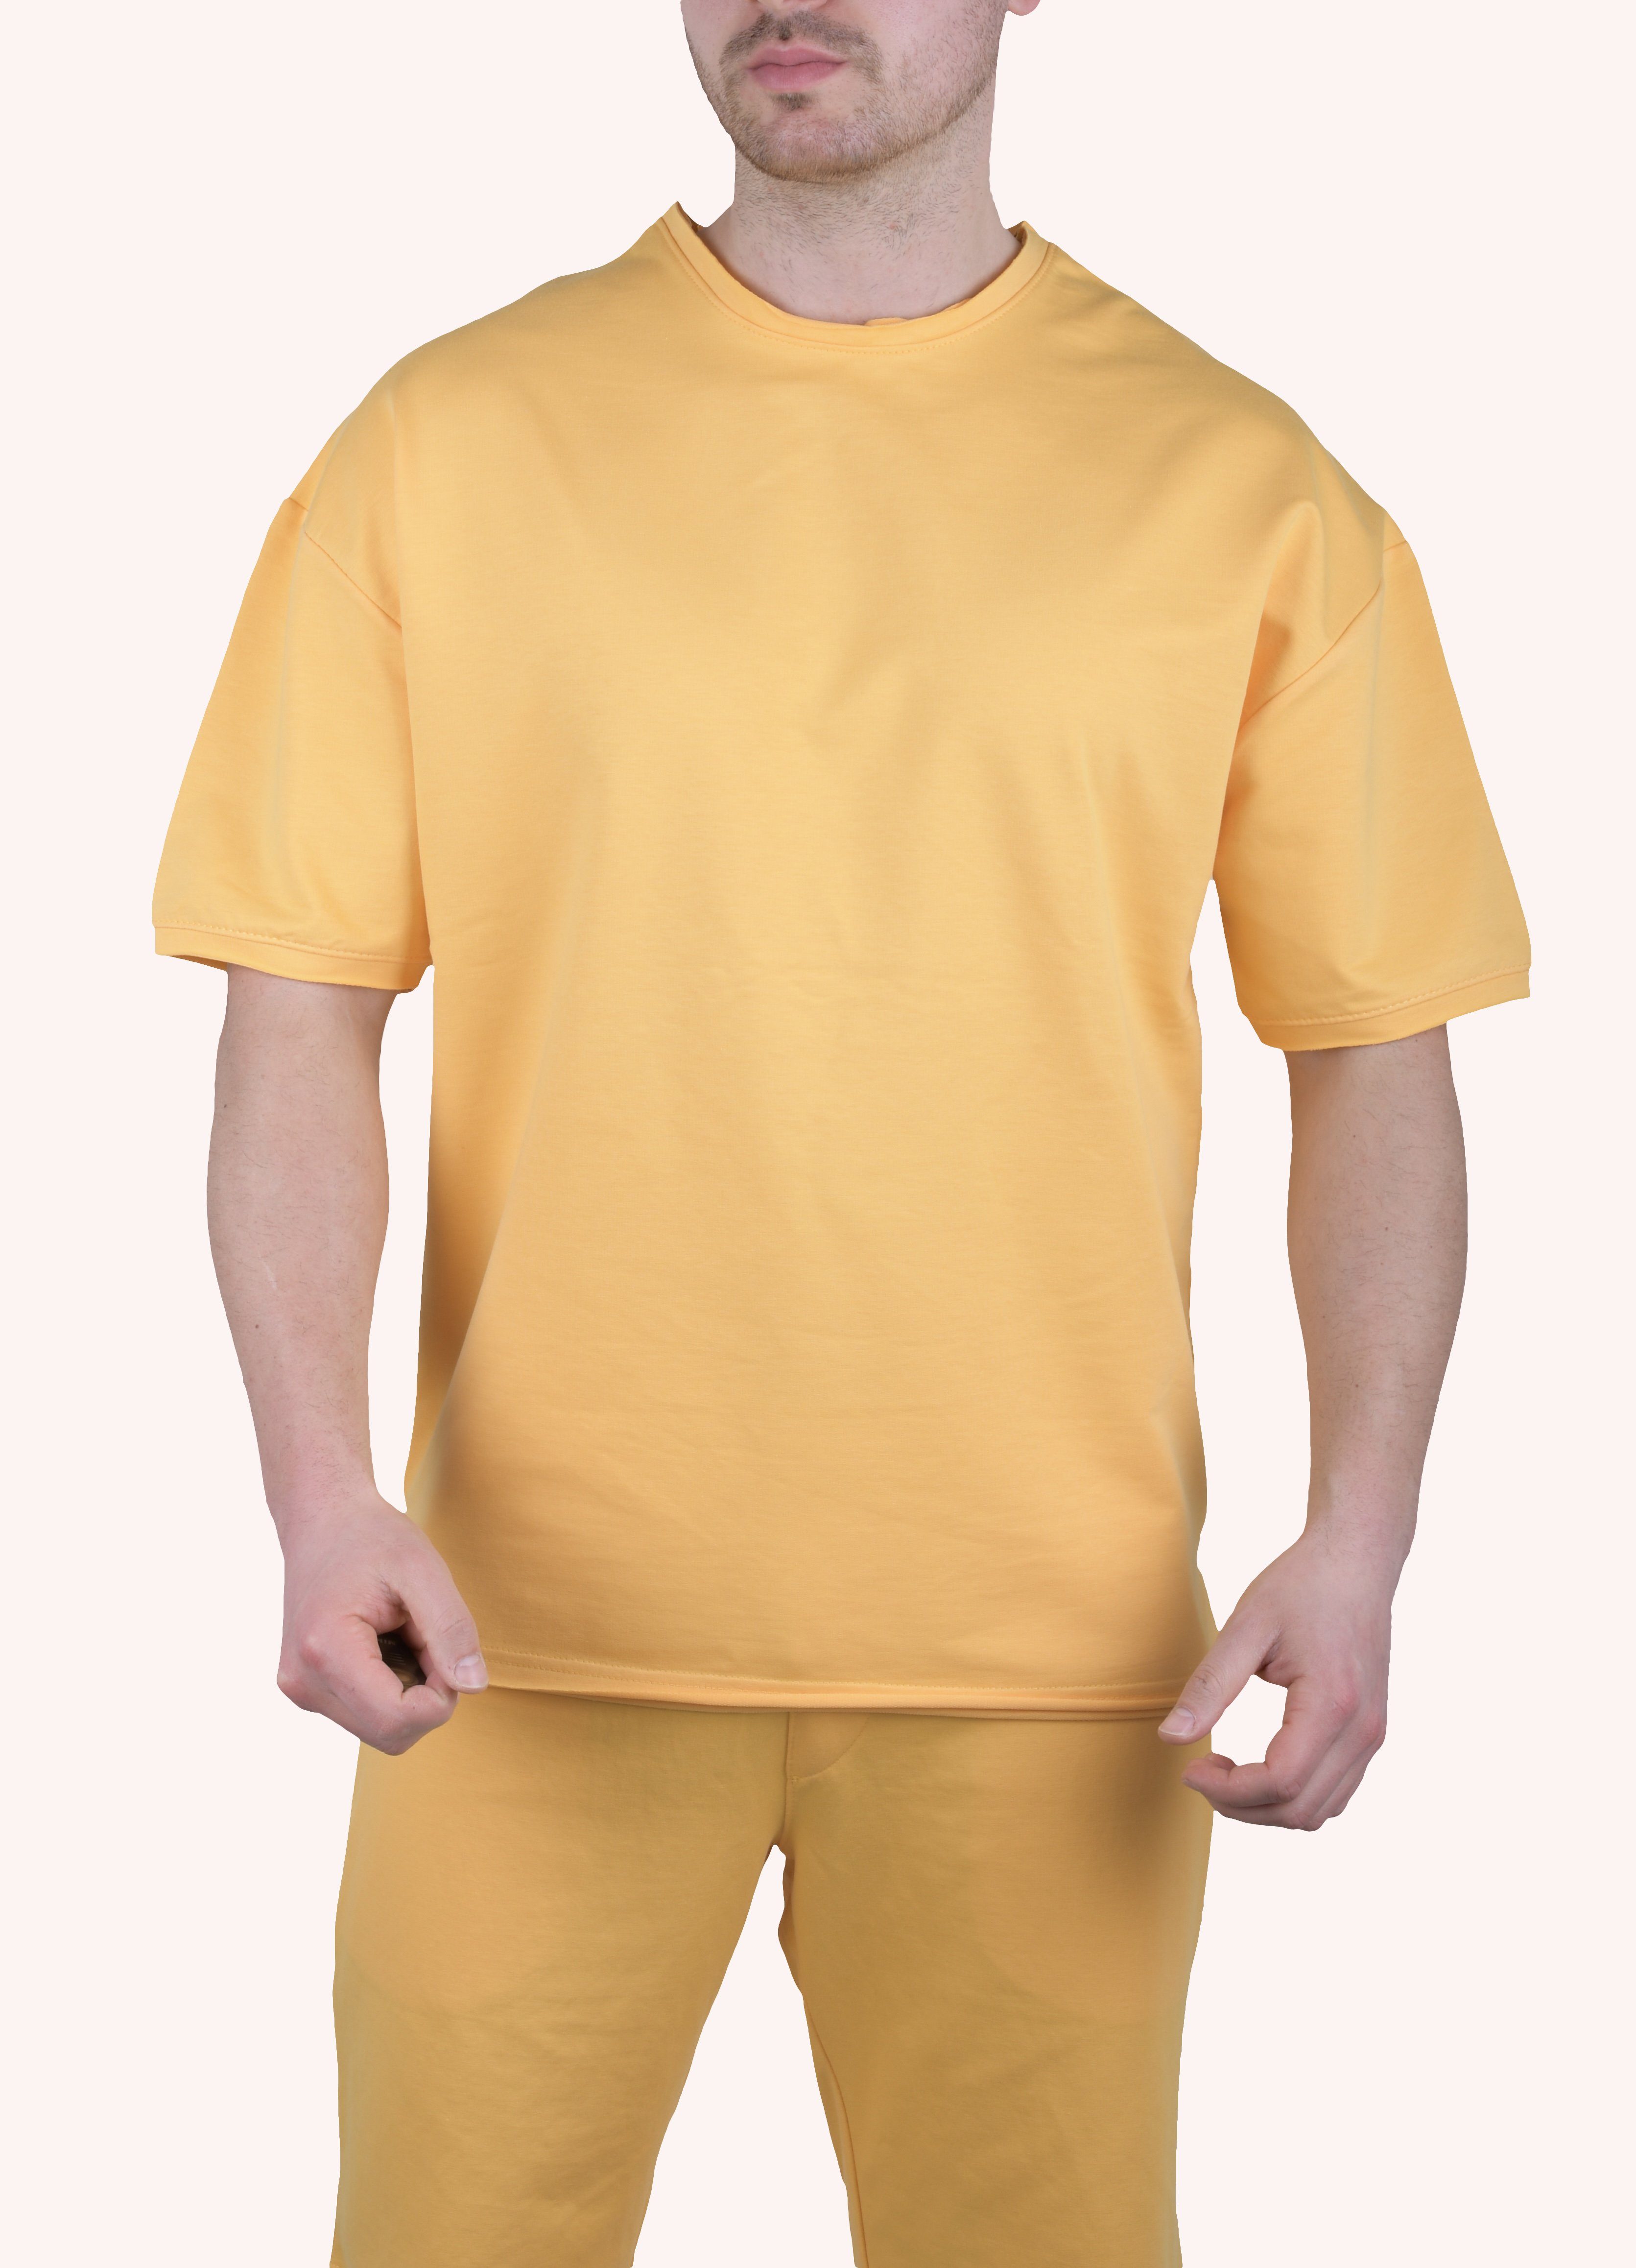 Megaman Jeans T-Shirt Herren T-Shirt Oversize Sommer Shirt Megaman TS5011 M Weiß Gelb